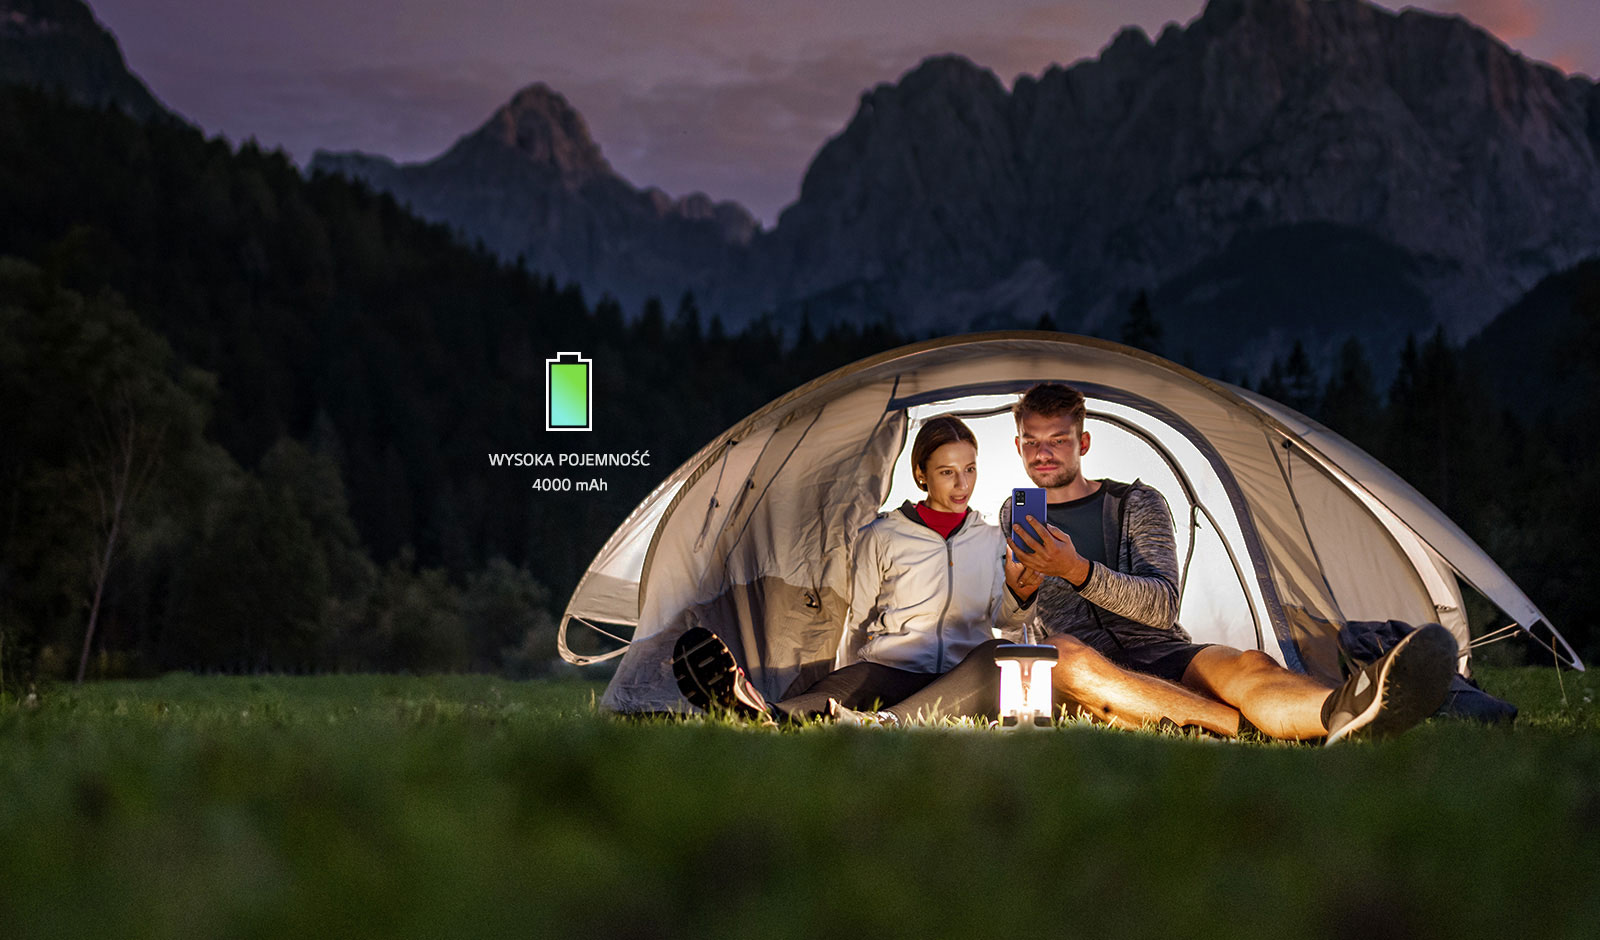 Mężczyzna i kobieta oglądają smartfona w namiocie w środku nocy.